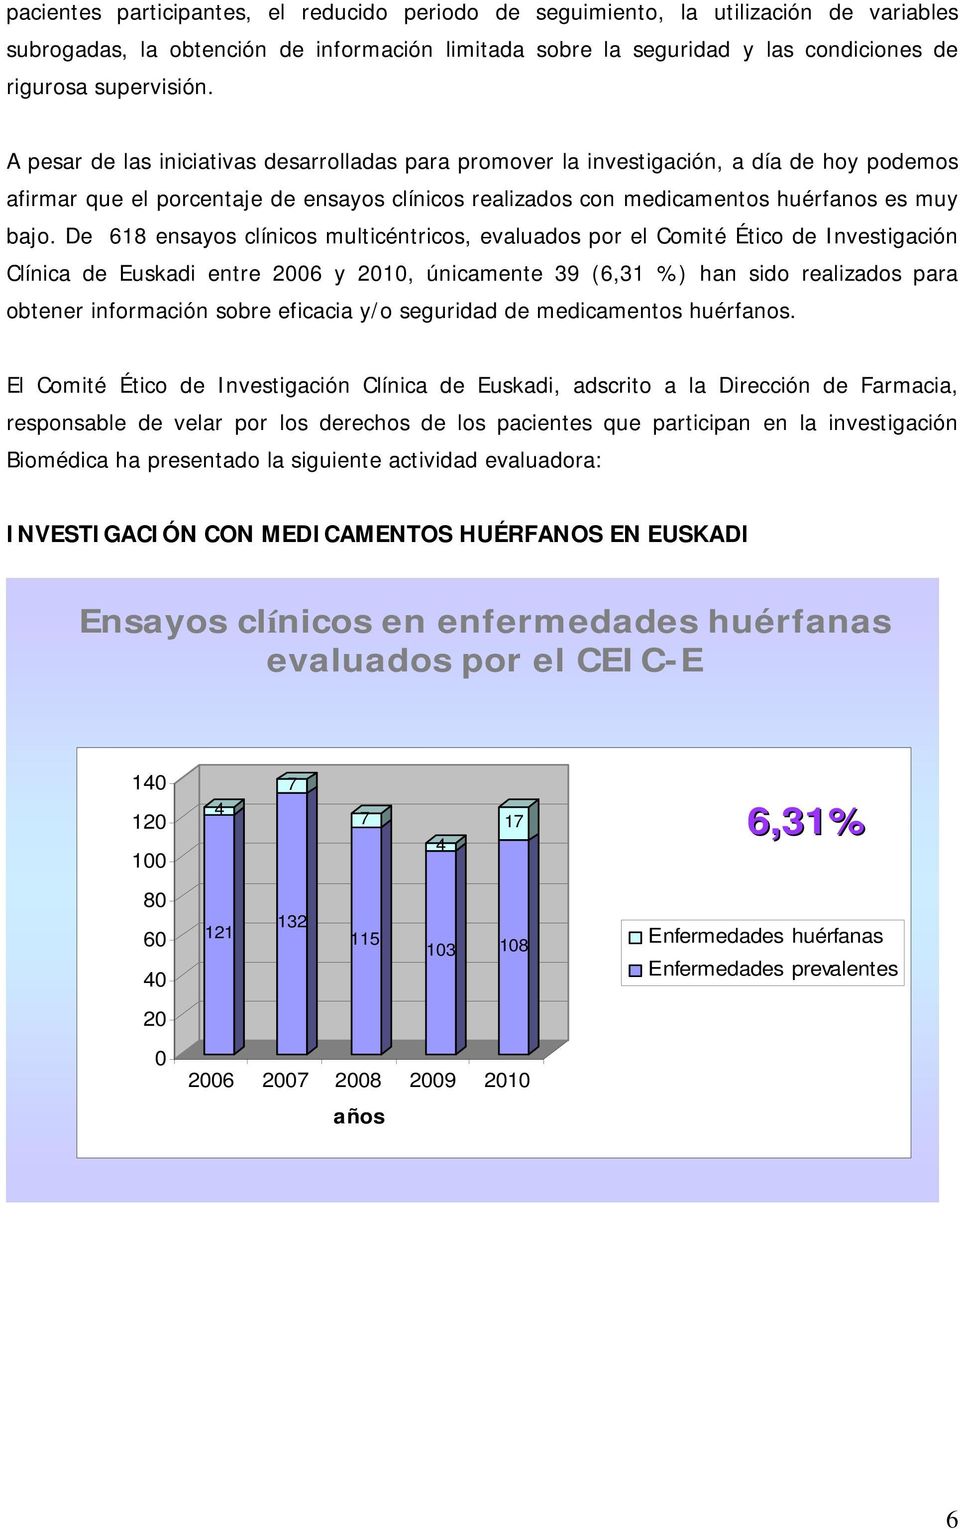 De 618 ensayos clínicos multicéntricos, evaluados por el Comité Ético de Investigación Clínica de Euskadi entre 2006 y 2010, únicamente 9 (6,1 %) han sido realizados para obtener información sobre